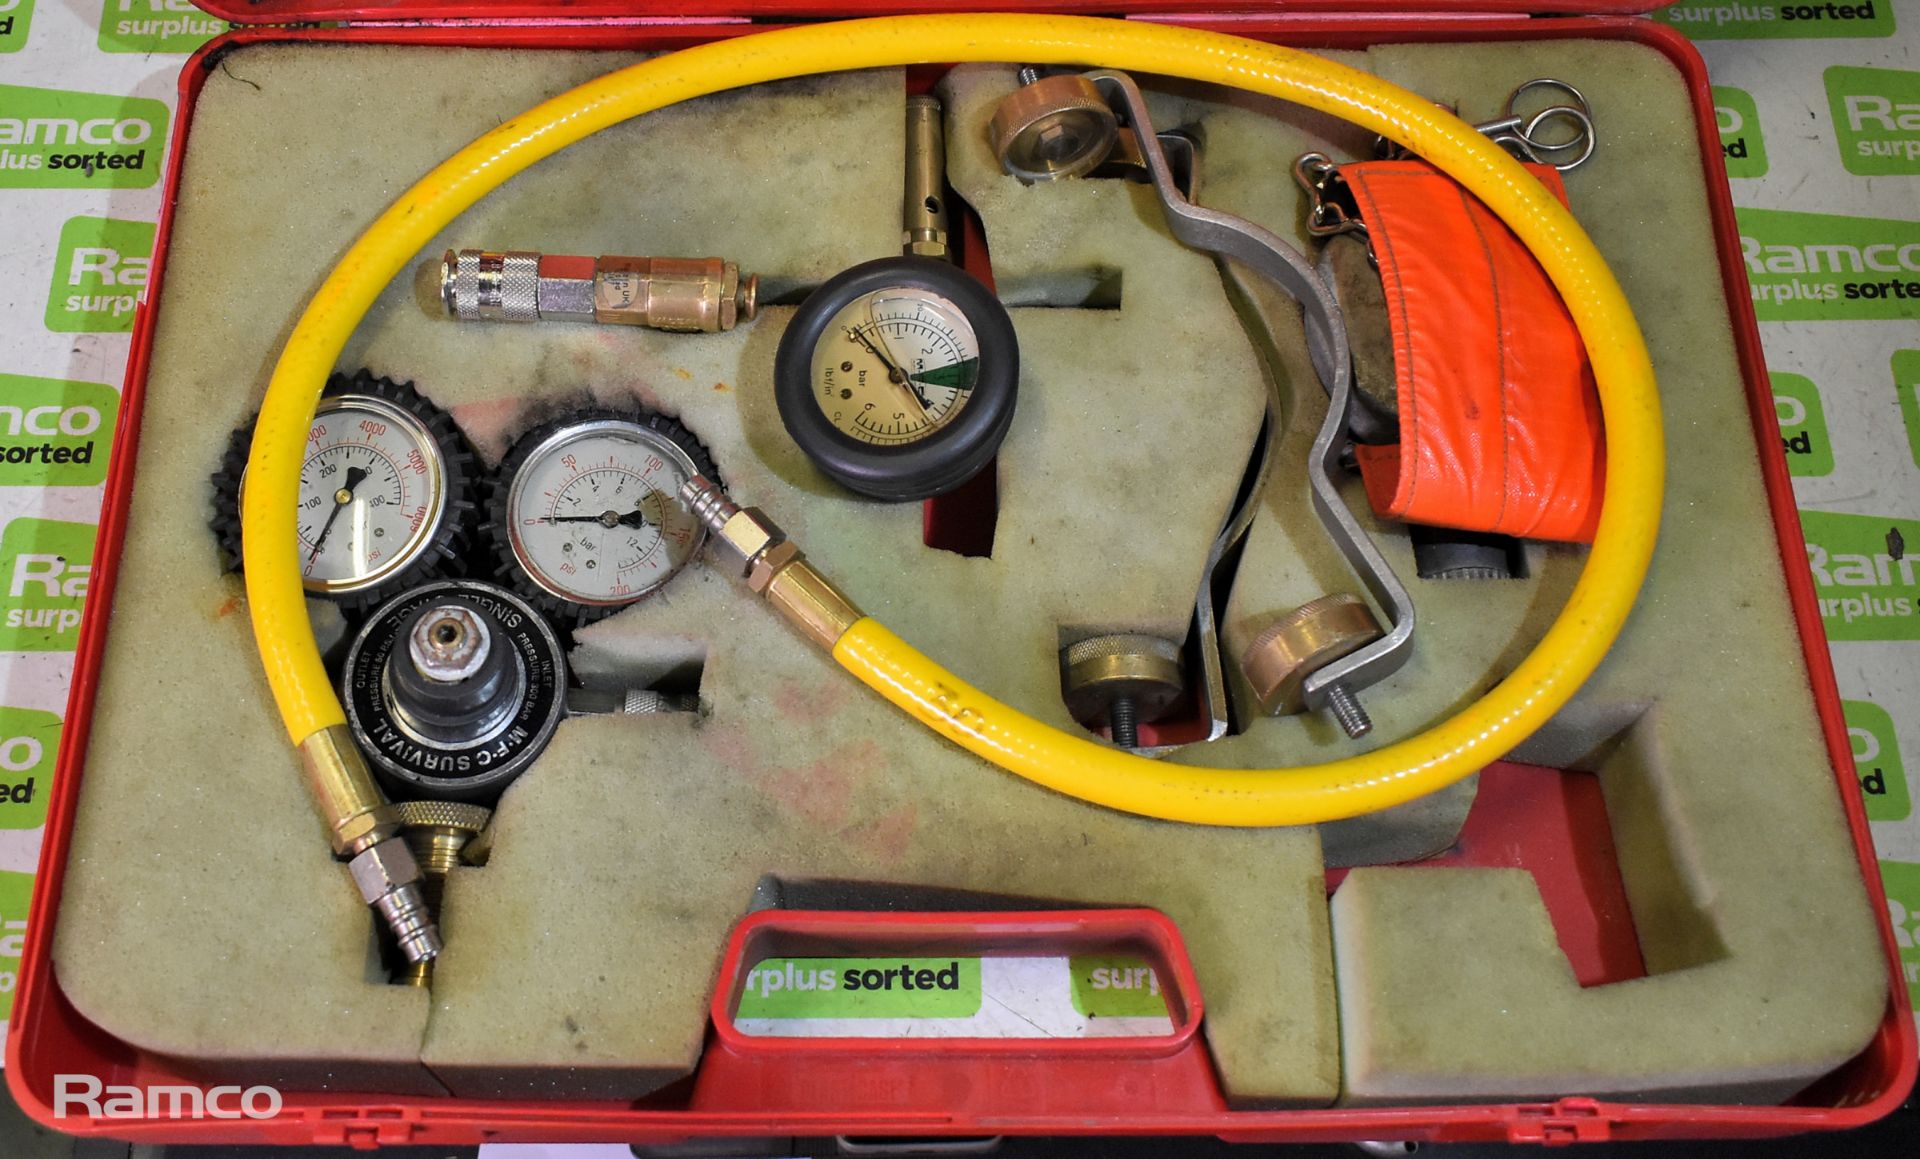 MFC Survival Ltd fire hose inflation kit - Image 2 of 7